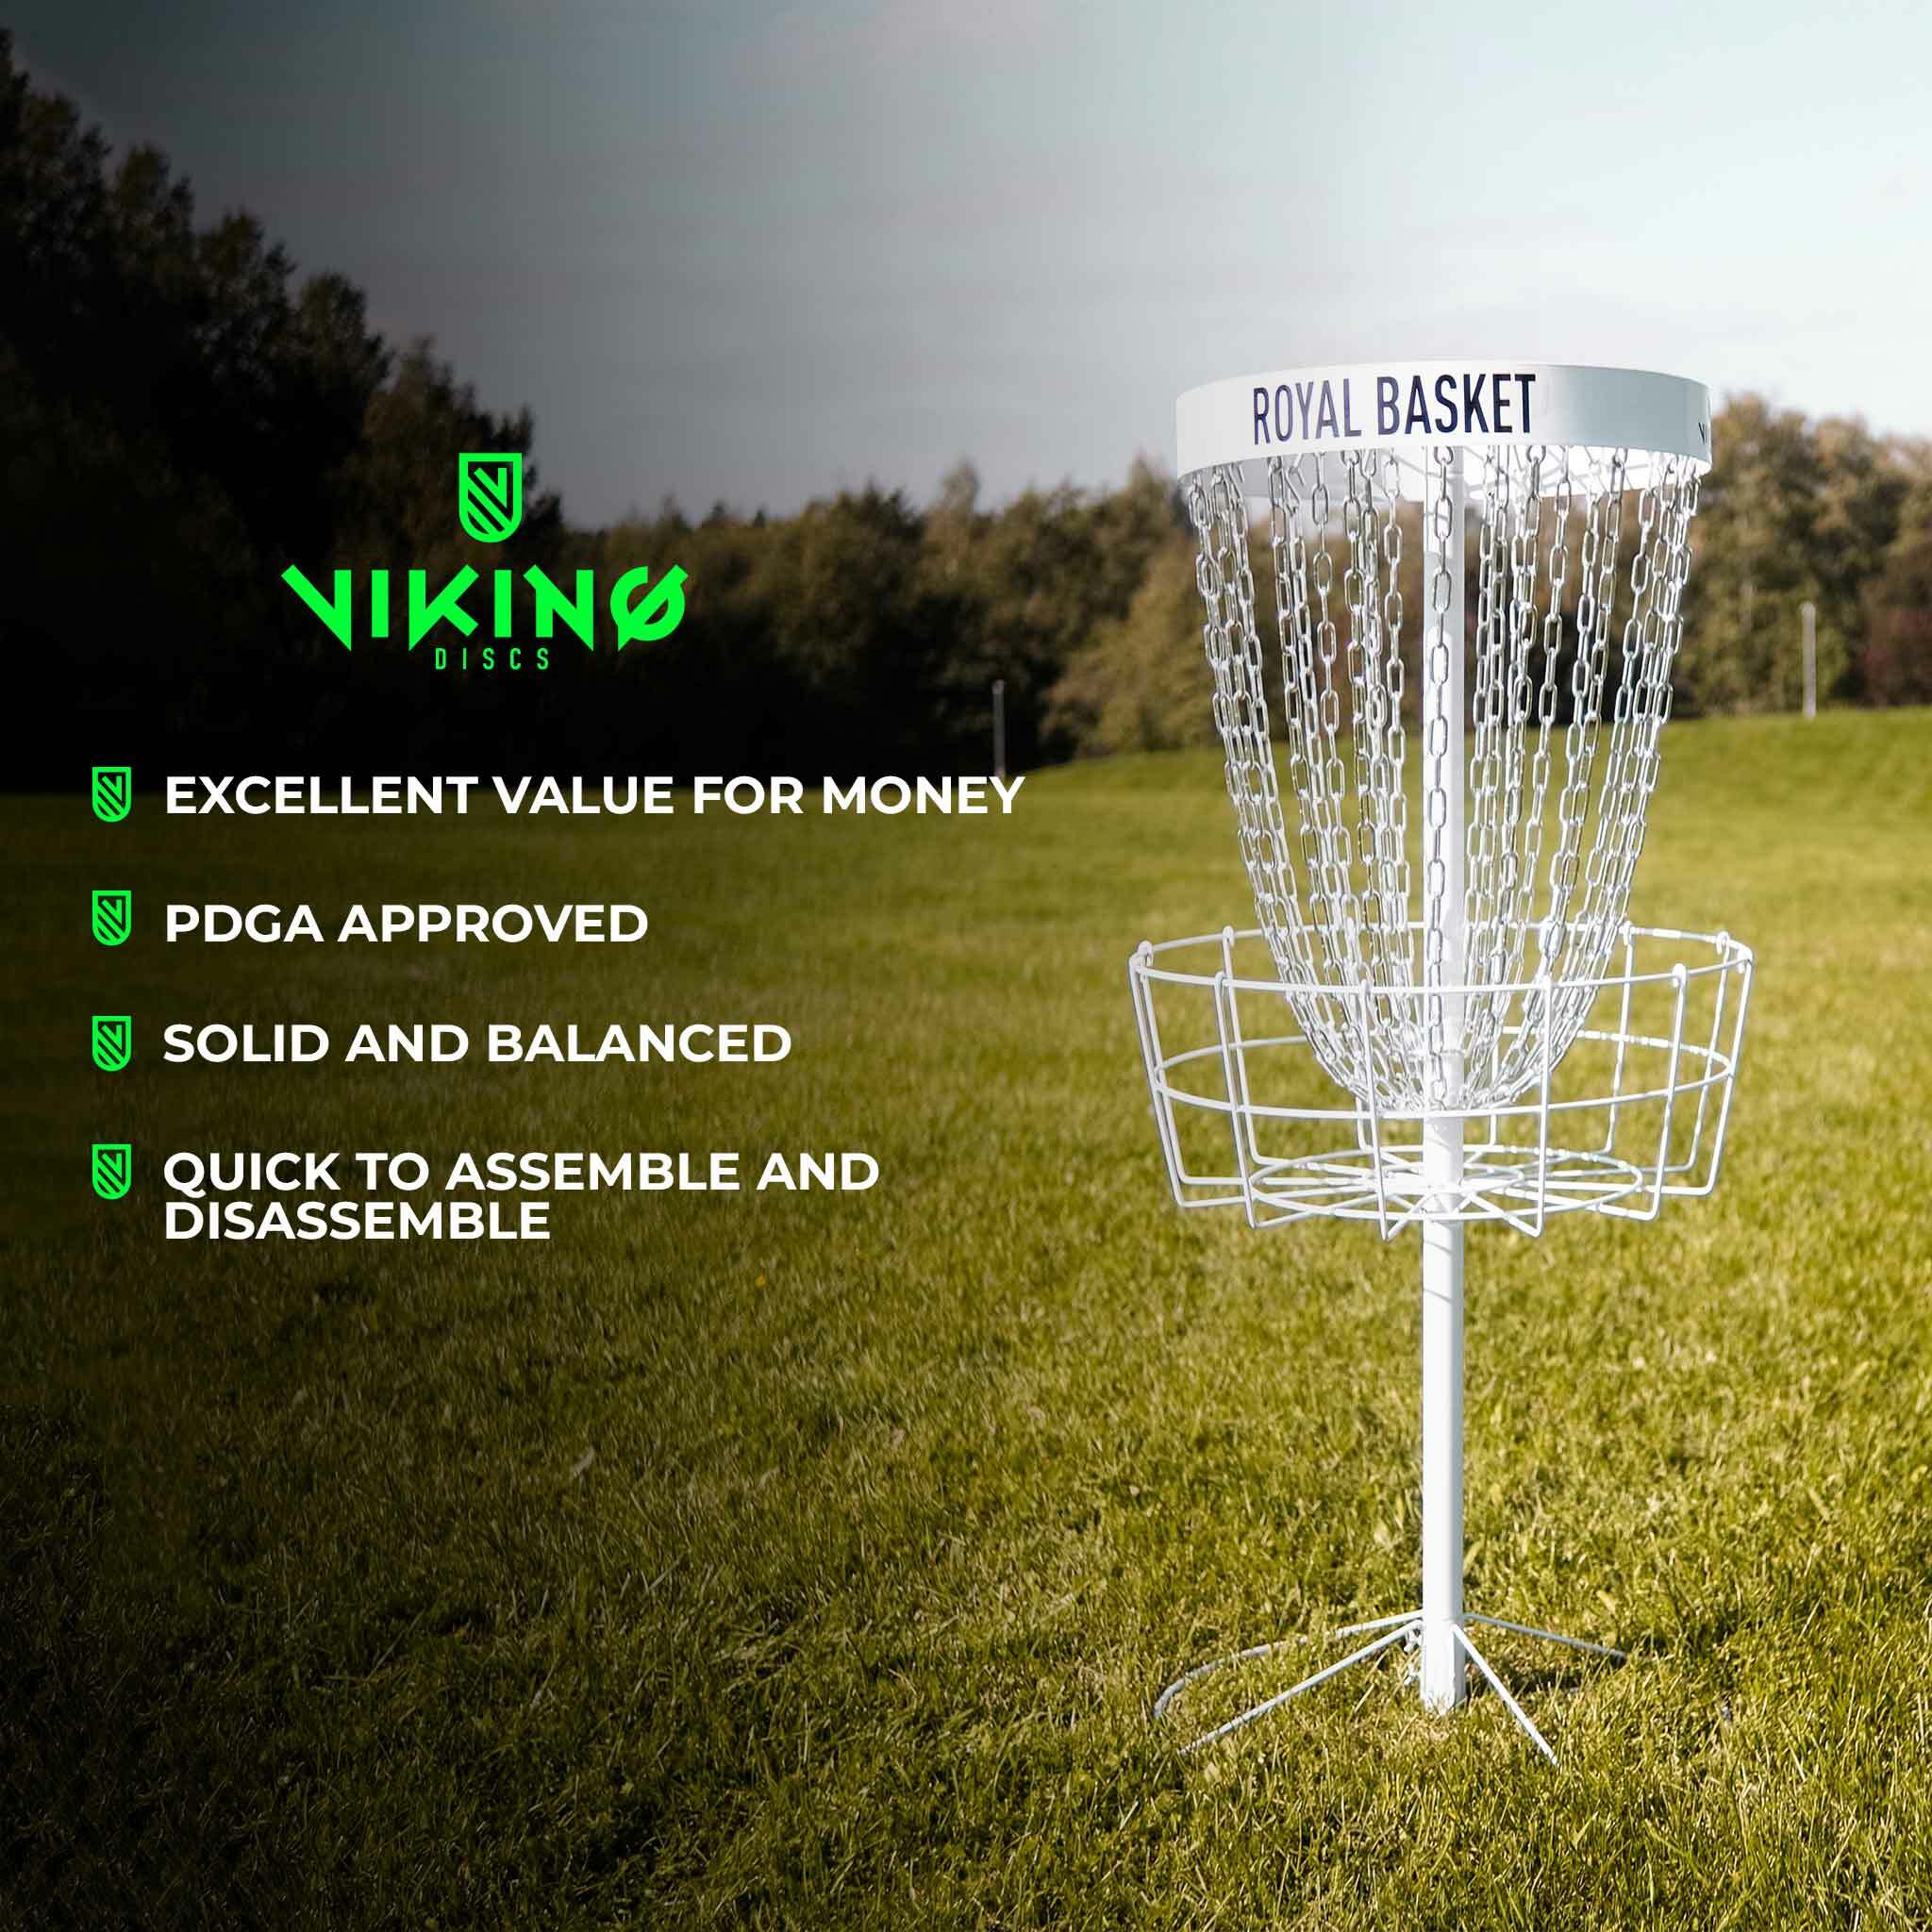 Viking Discs Royal Basket Disc Golf Basket - 159,00 EUR - Nordic